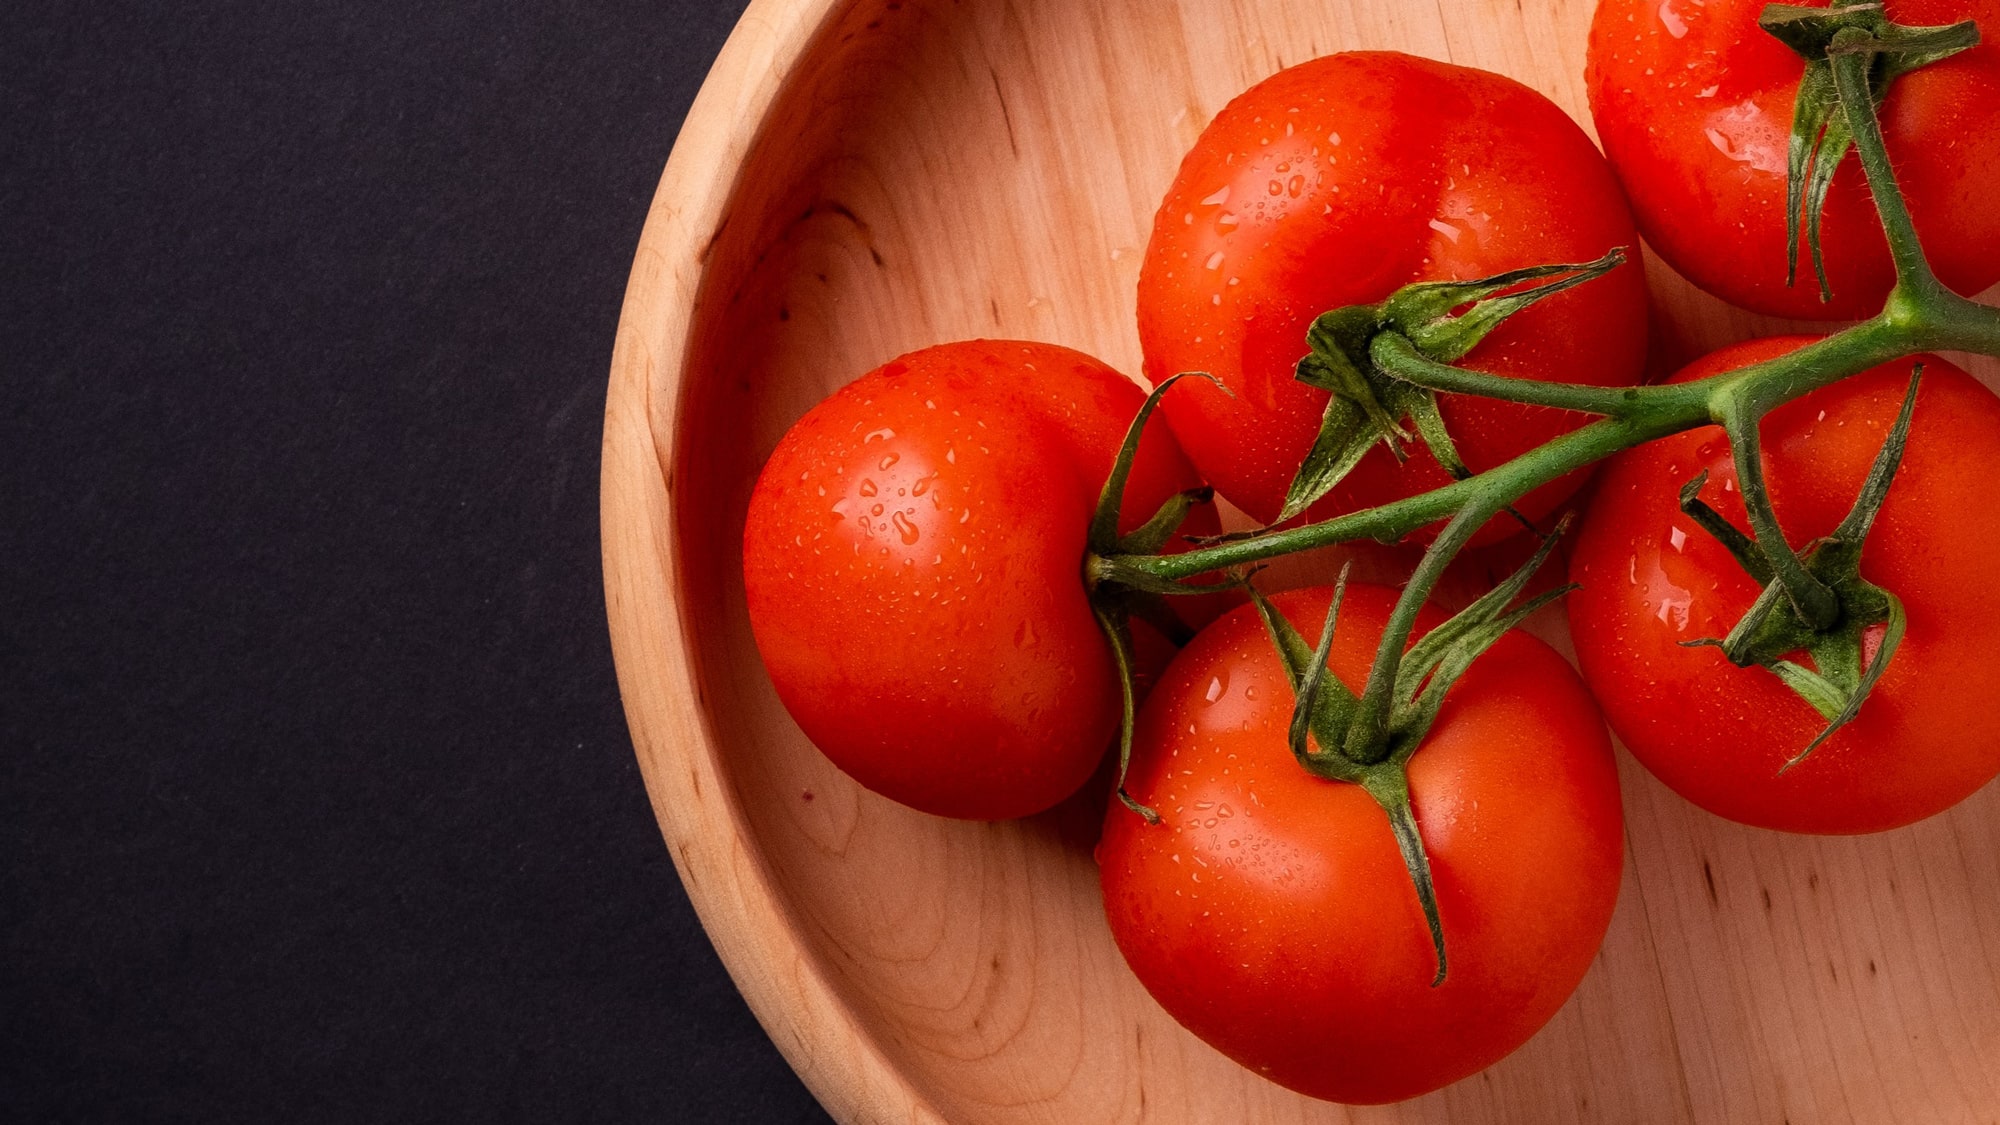 Kaip užšaldyti pomidorus?  Daryk taip